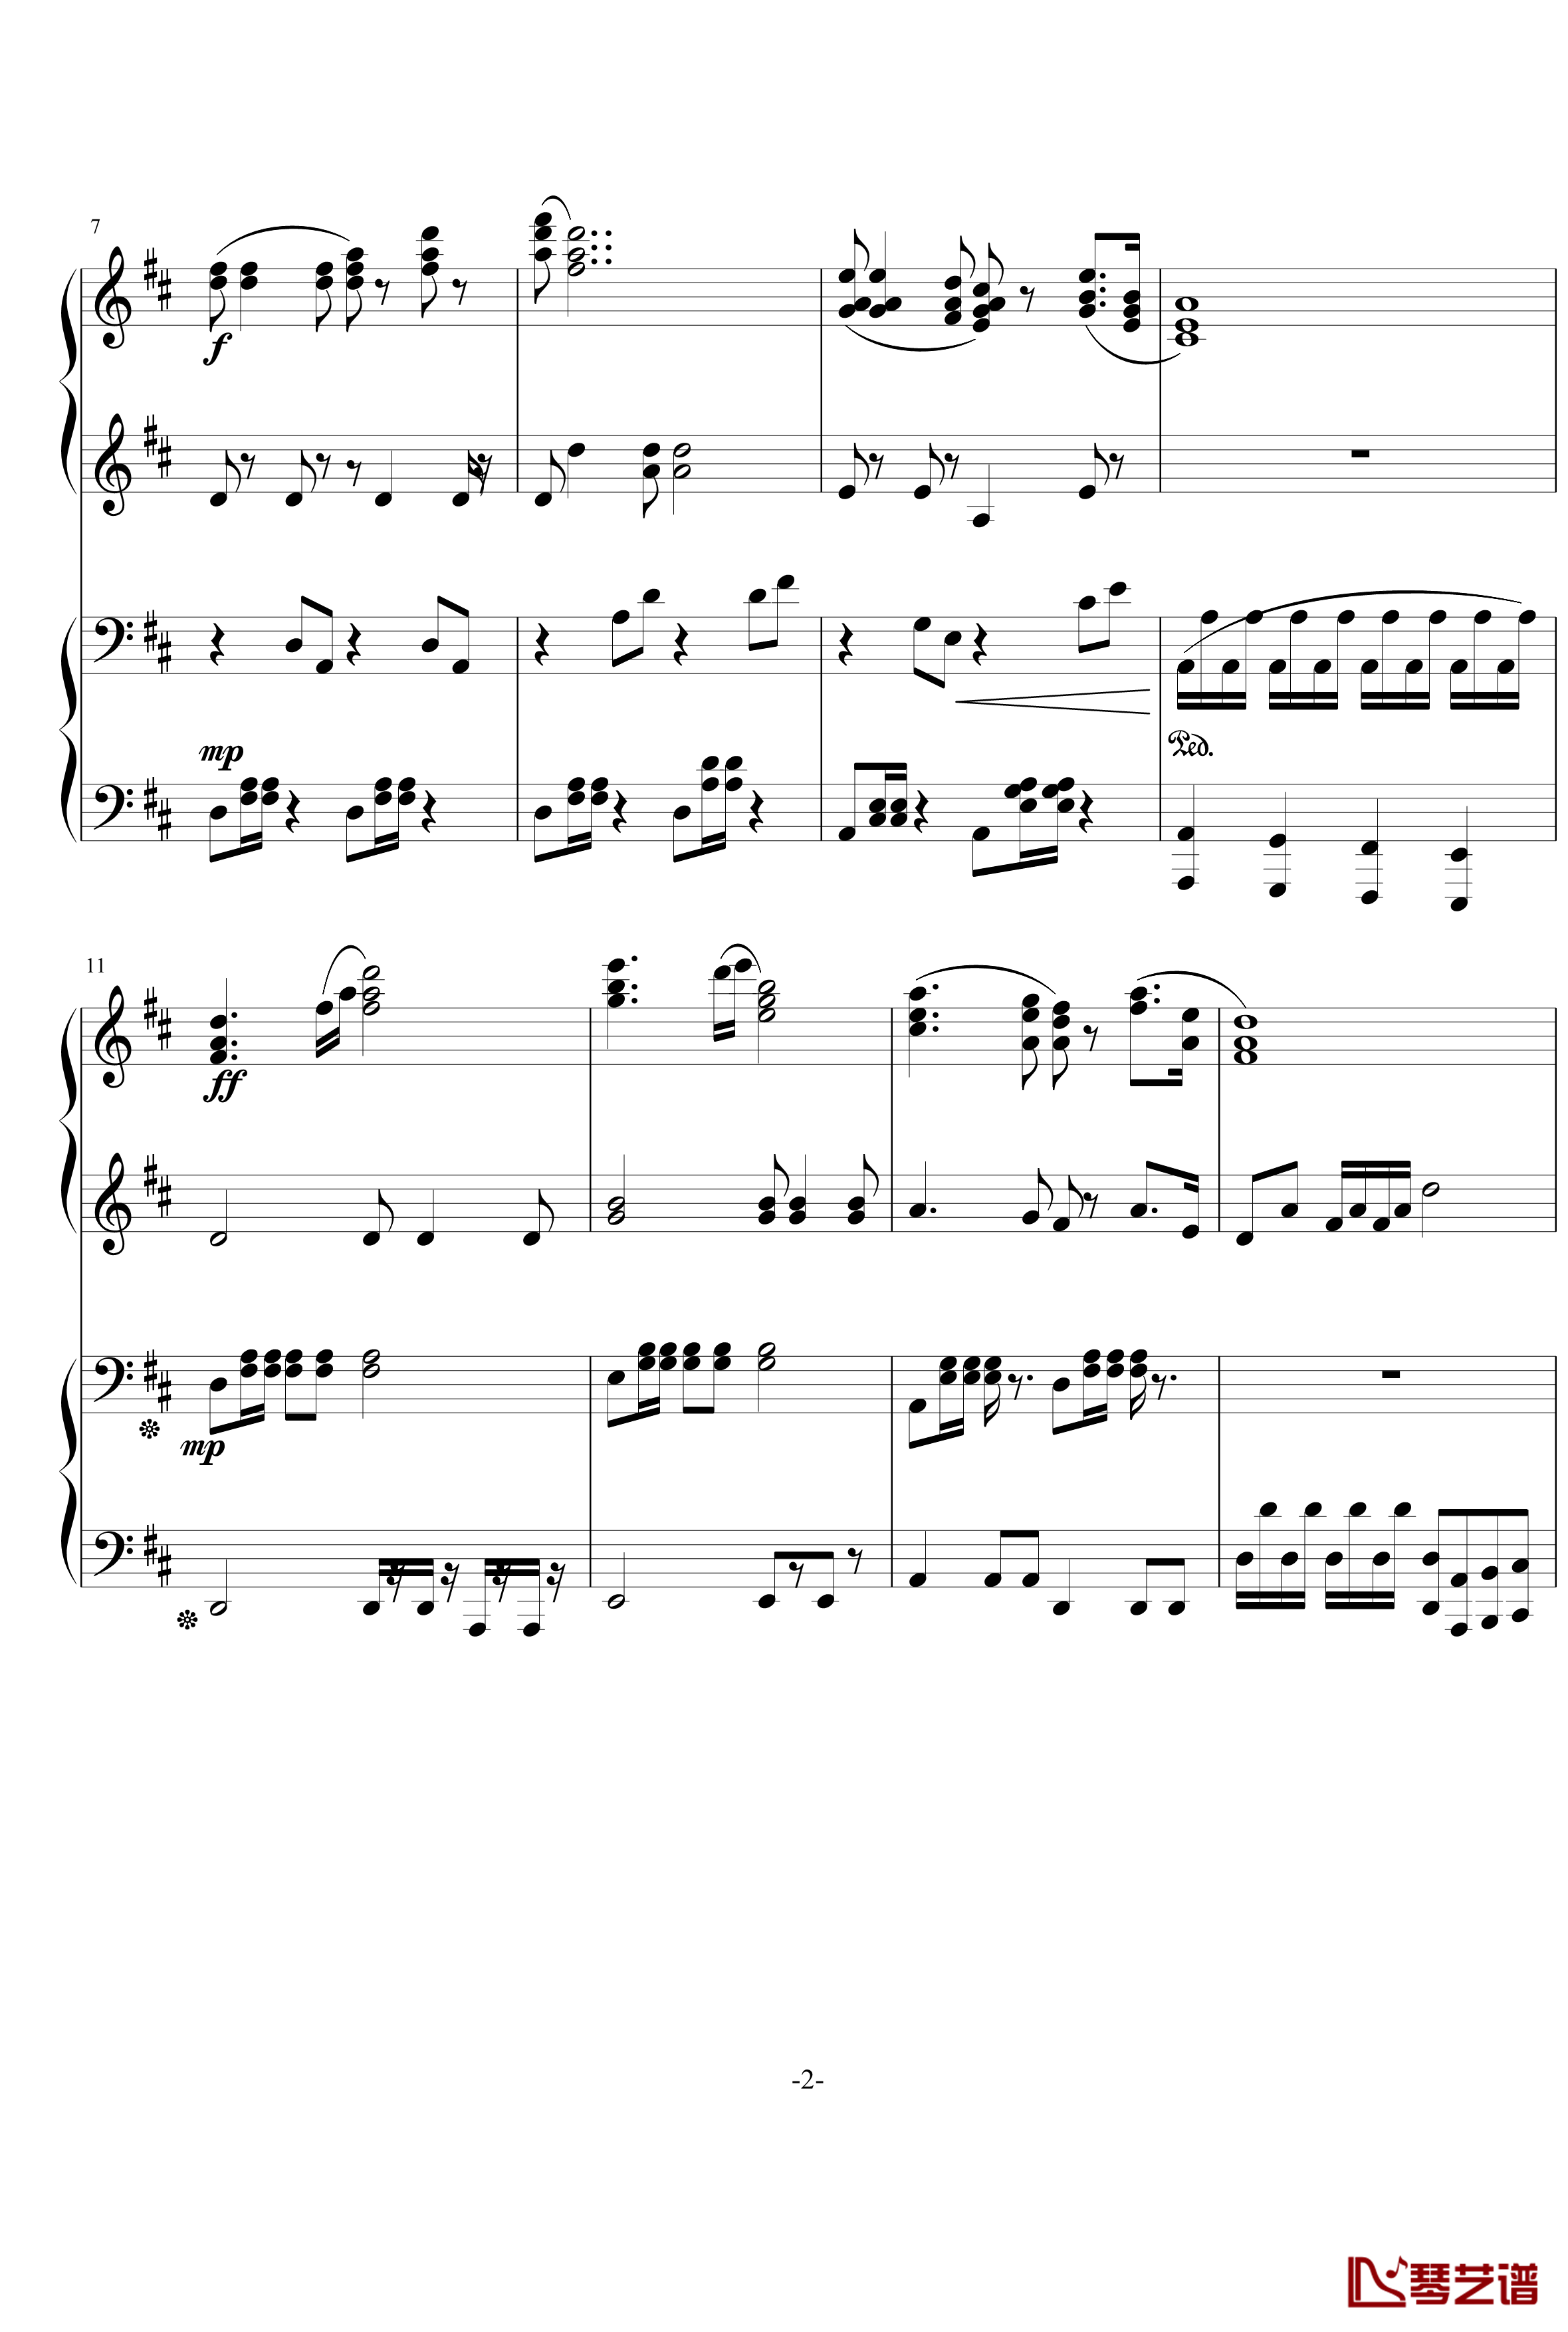 无题钢琴谱-军歌-北平乐师2